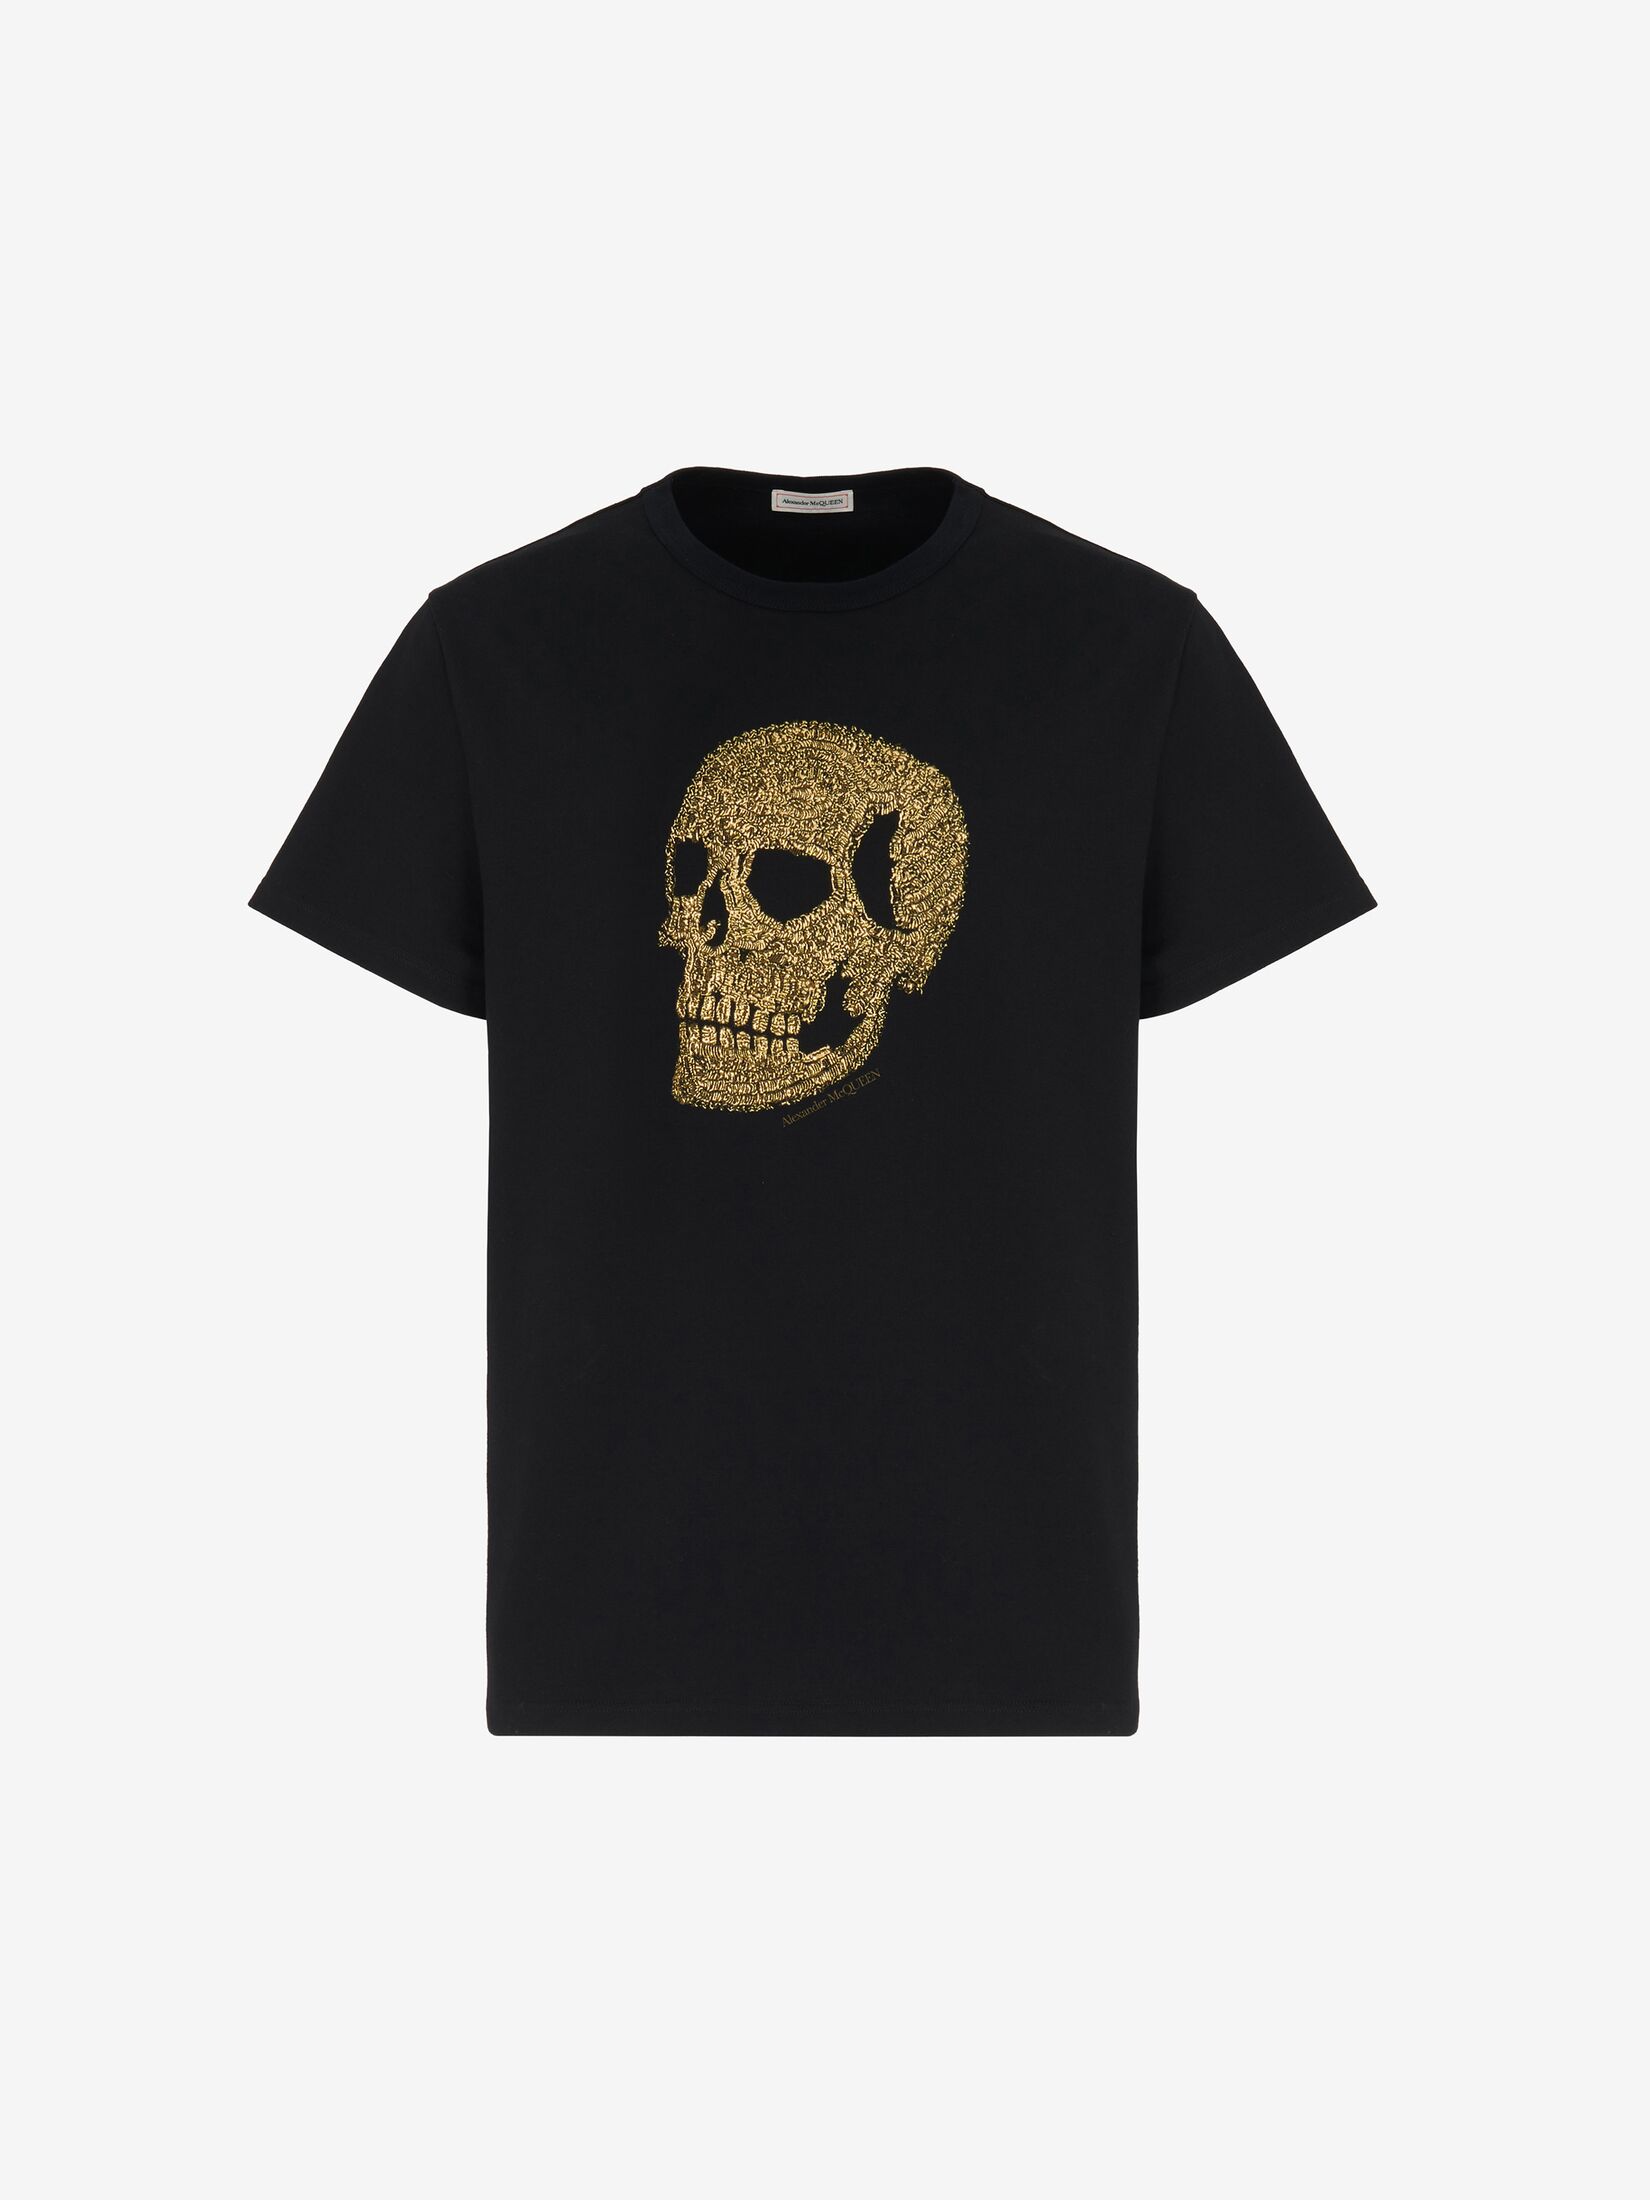 T-shirt Skull